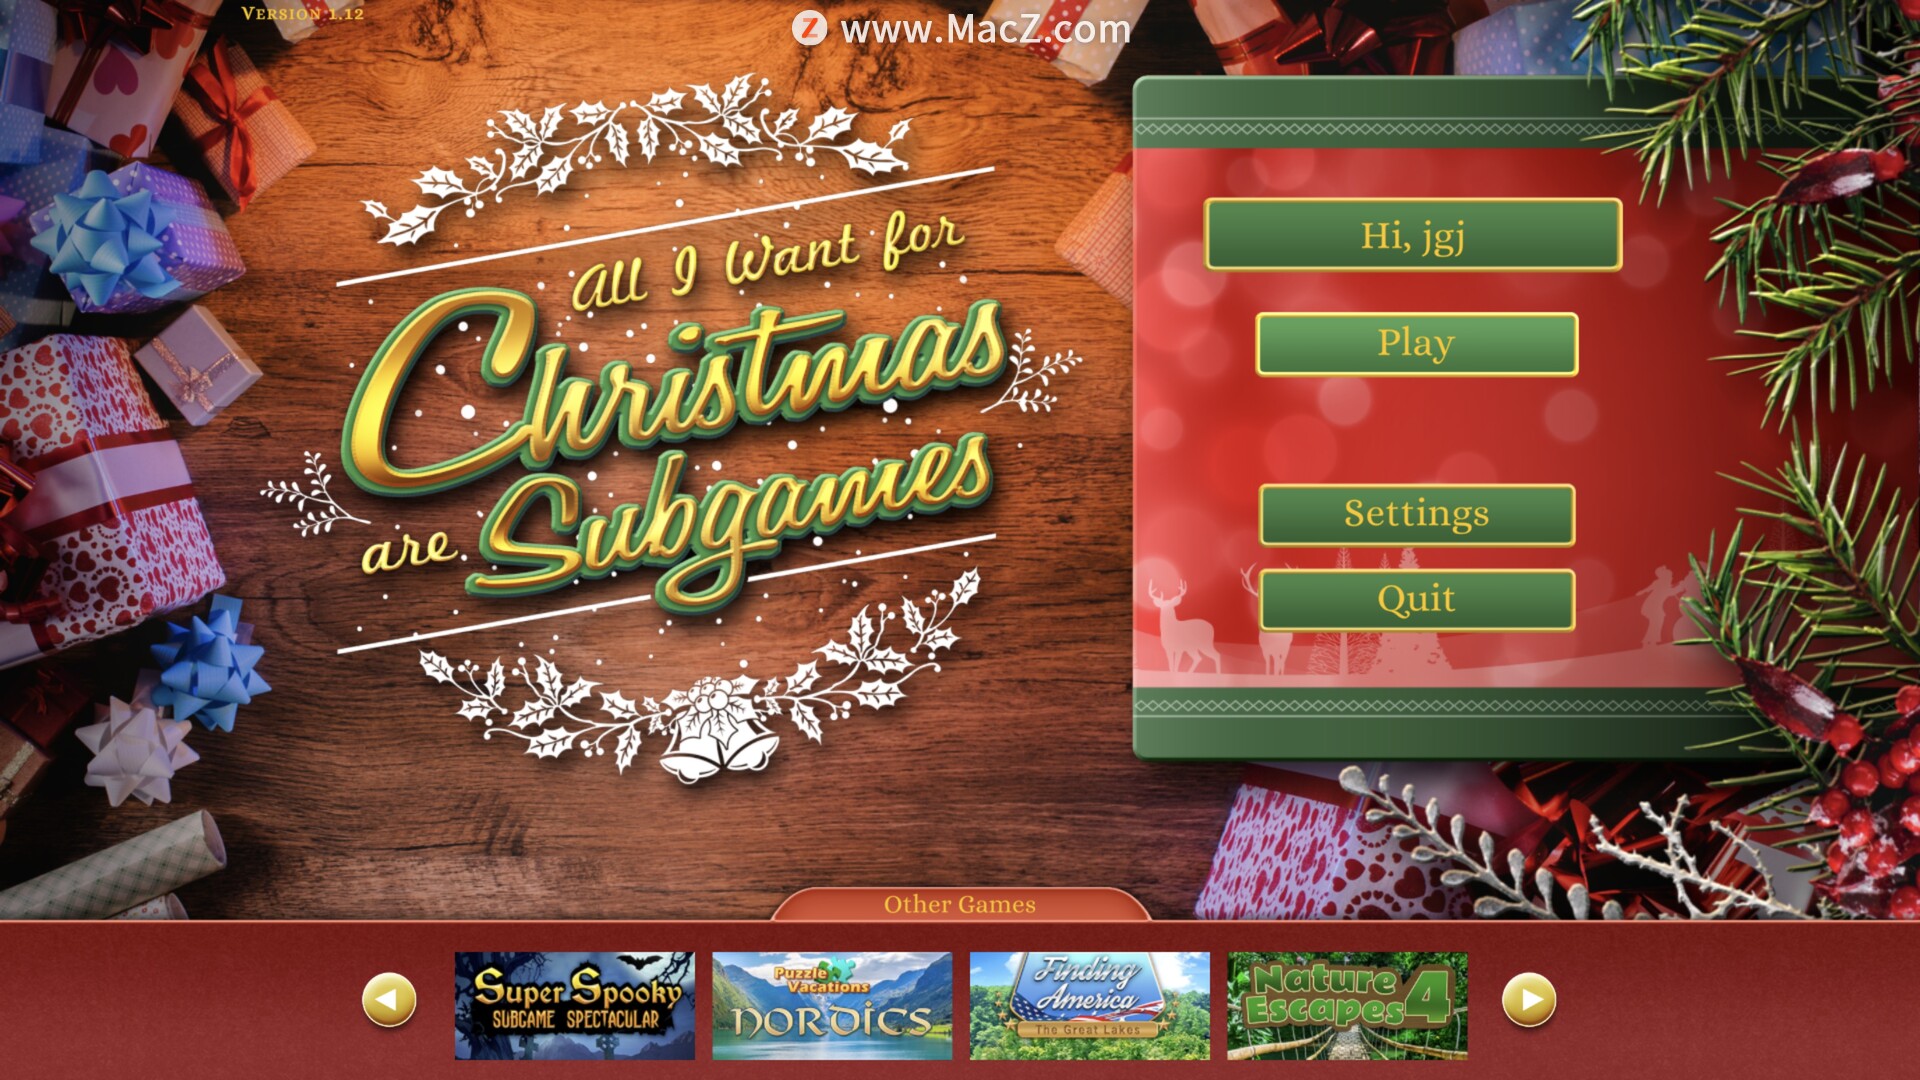 圣诞节我只想玩小游戏 All I Want For Christmas Are Subgames  mac(隐藏解谜游戏)